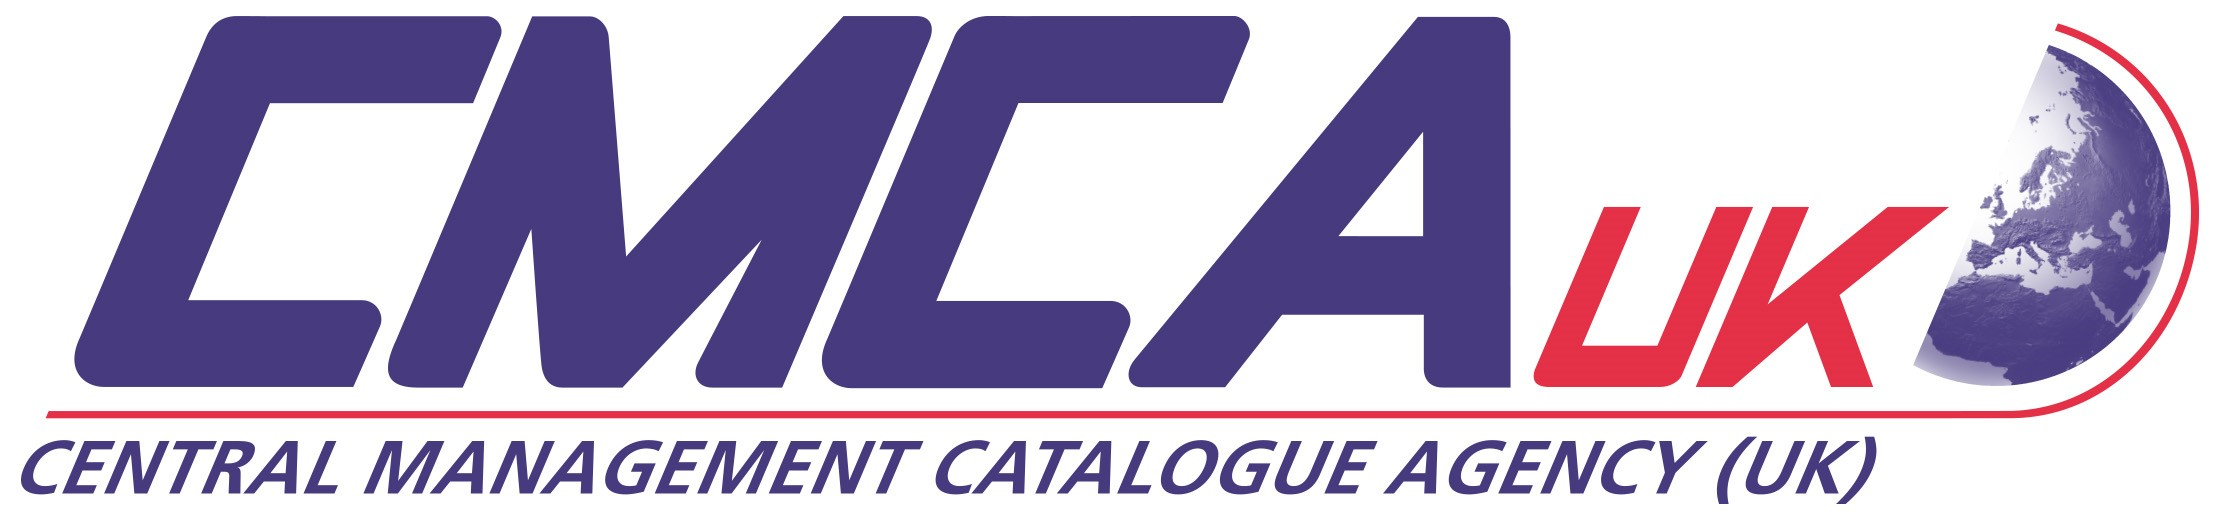 CMCA (UK) Ltd